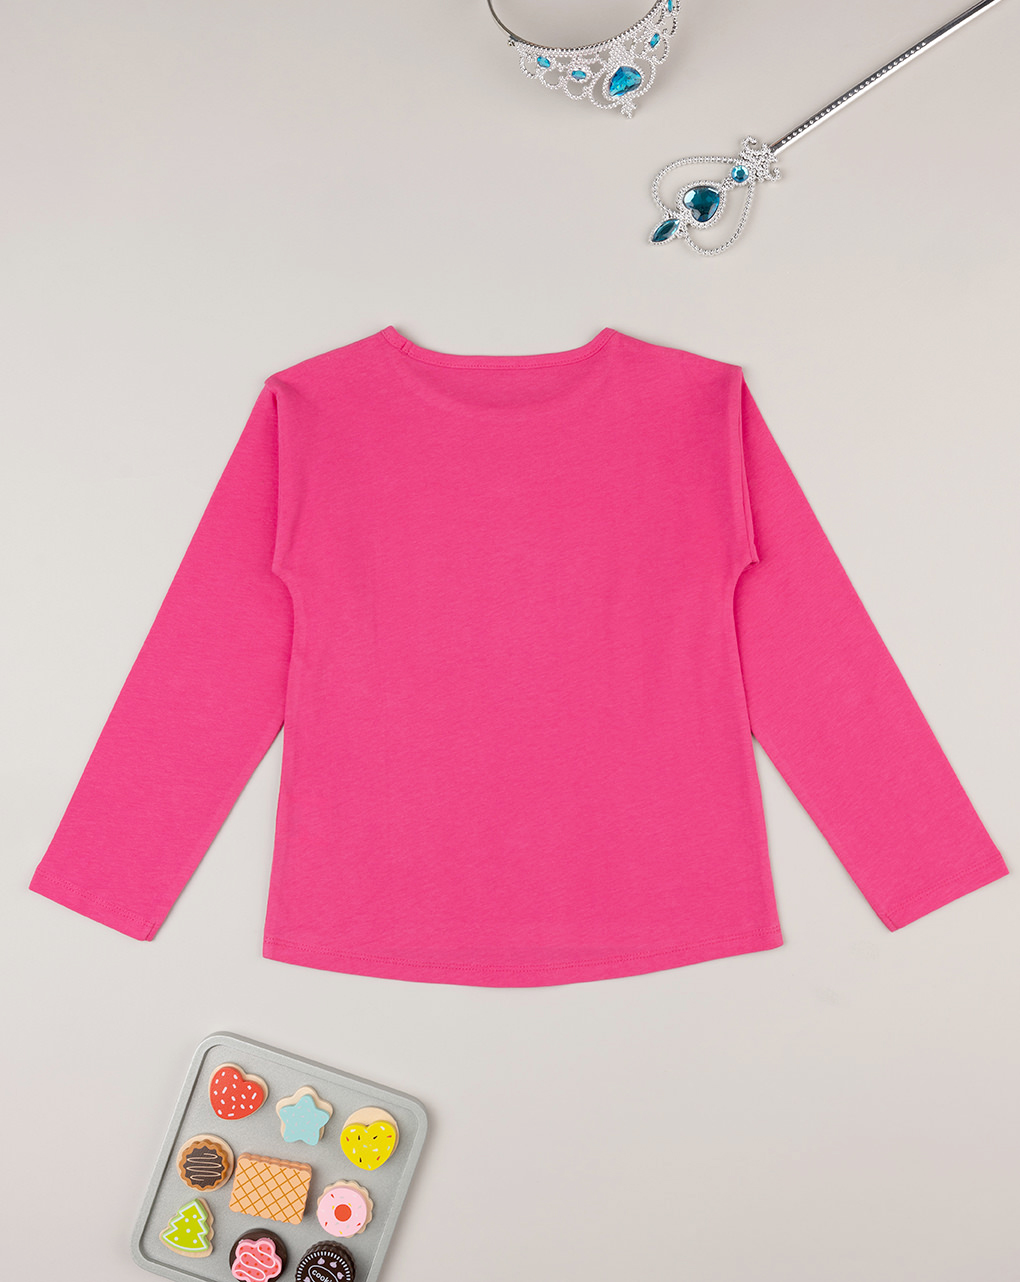 παιδική μπλούζα φούξια με μονόκερο για κορίτσι - Prénatal